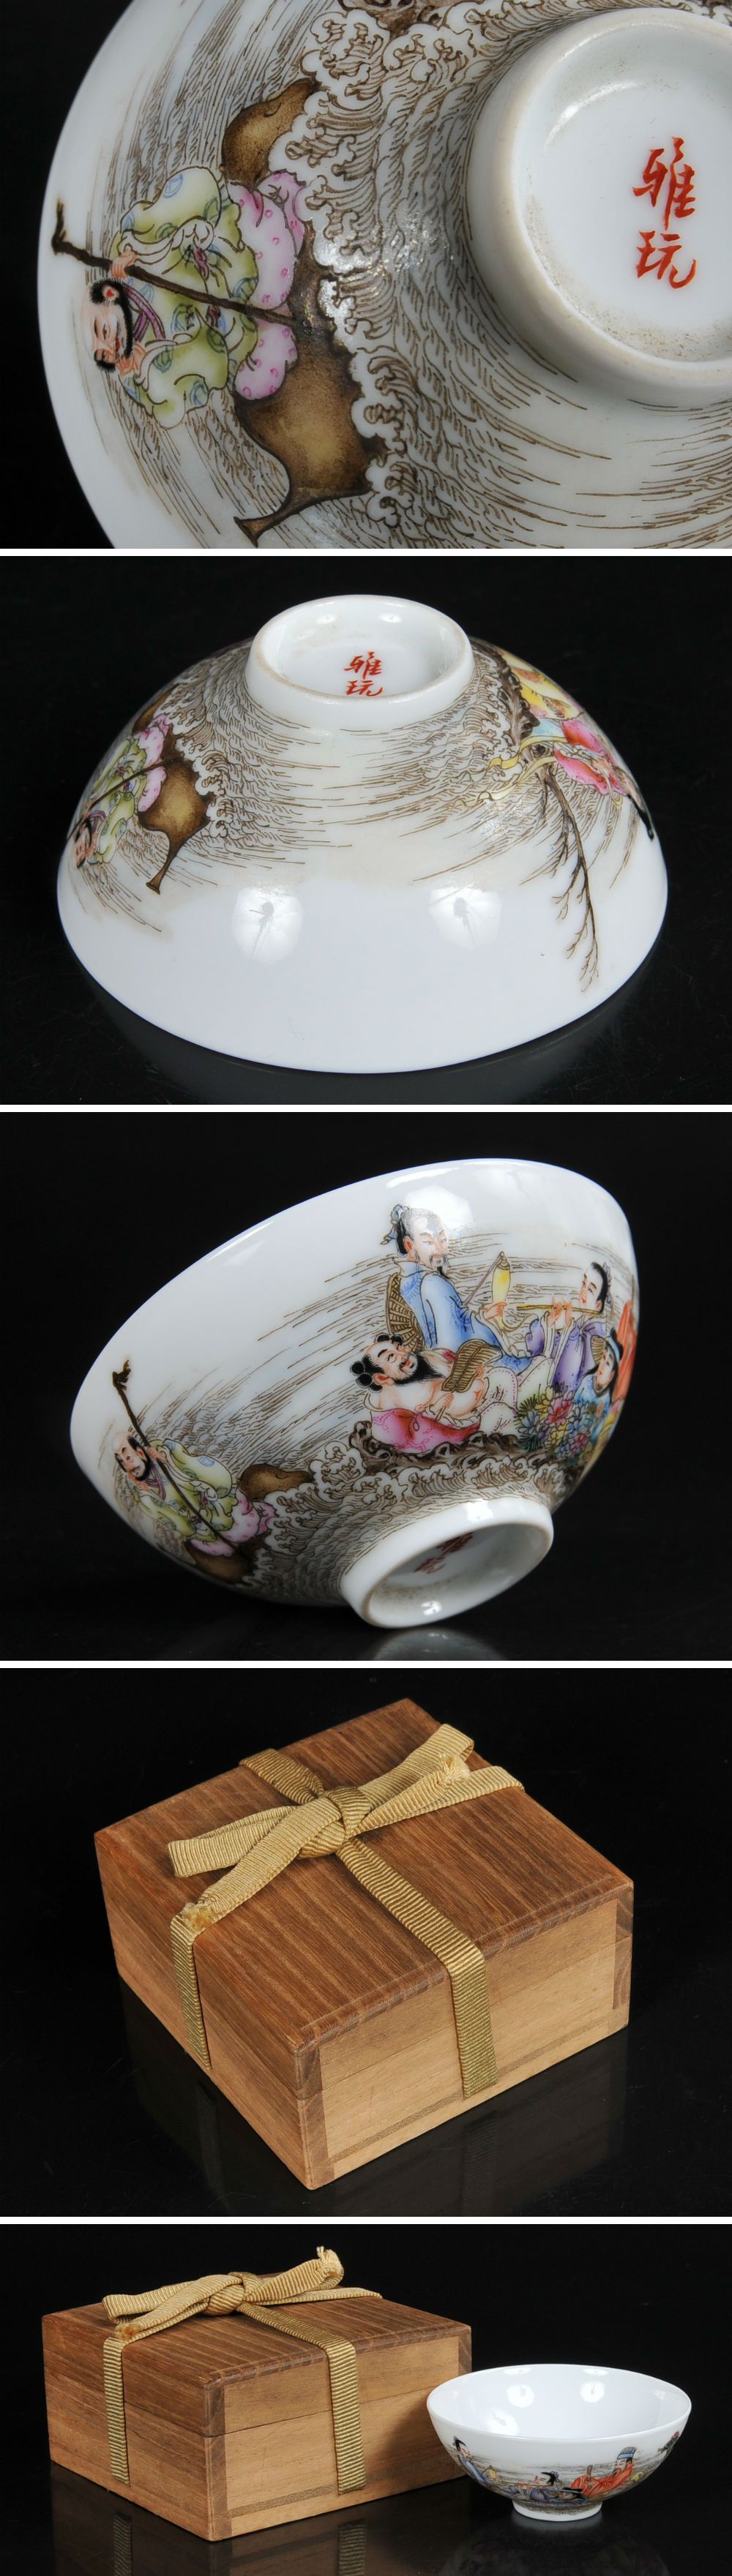 明治期 伊万里焼 錦手 金彩 鳥 七宝図 見込み雲龍 色絵 蓋茶碗 １６客